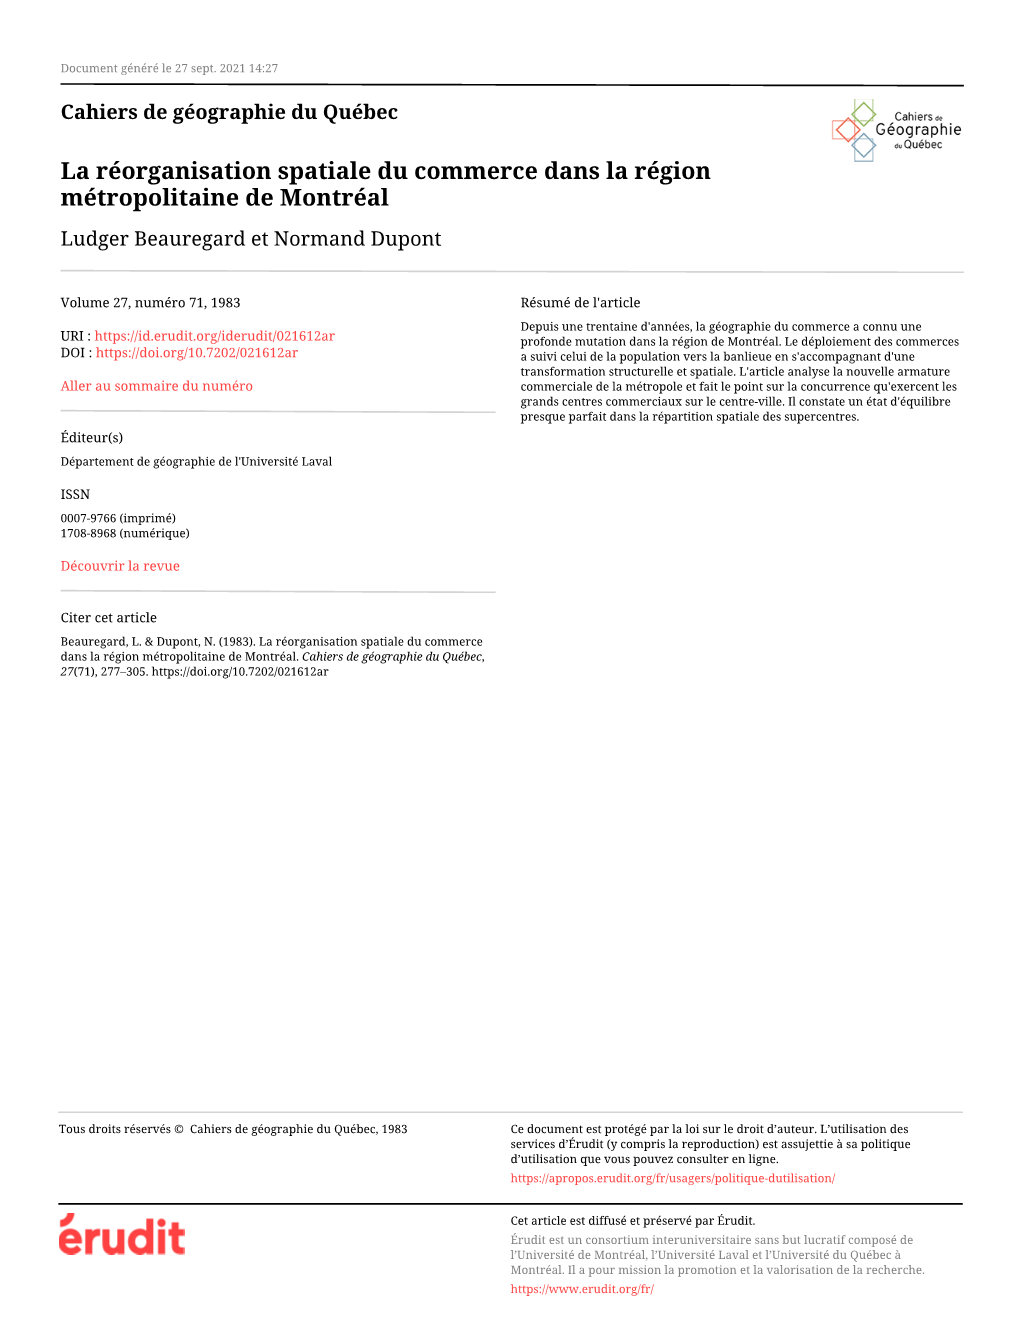 La Réorganisation Spatiale Du Commerce Dans La Région Métropolitaine De Montréal Ludger Beauregard Et Normand Dupont